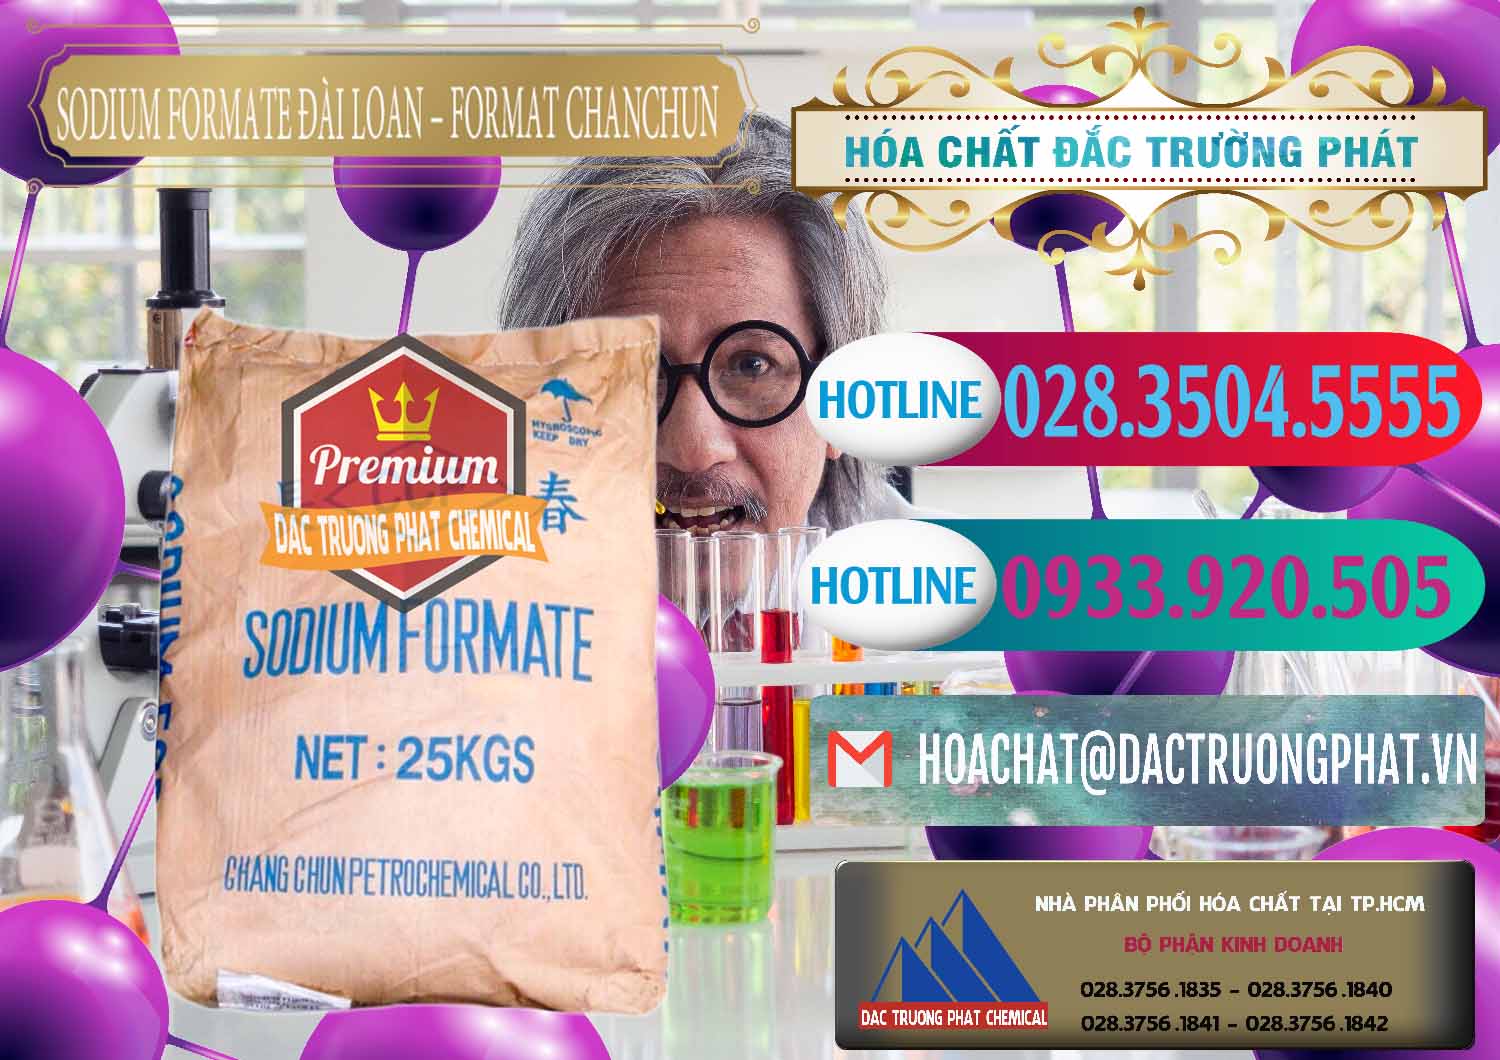 Công ty cung ứng và bán Sodium Formate - Natri Format Đài Loan Taiwan - 0141 - Nơi chuyên bán & phân phối hóa chất tại TP.HCM - truongphat.vn